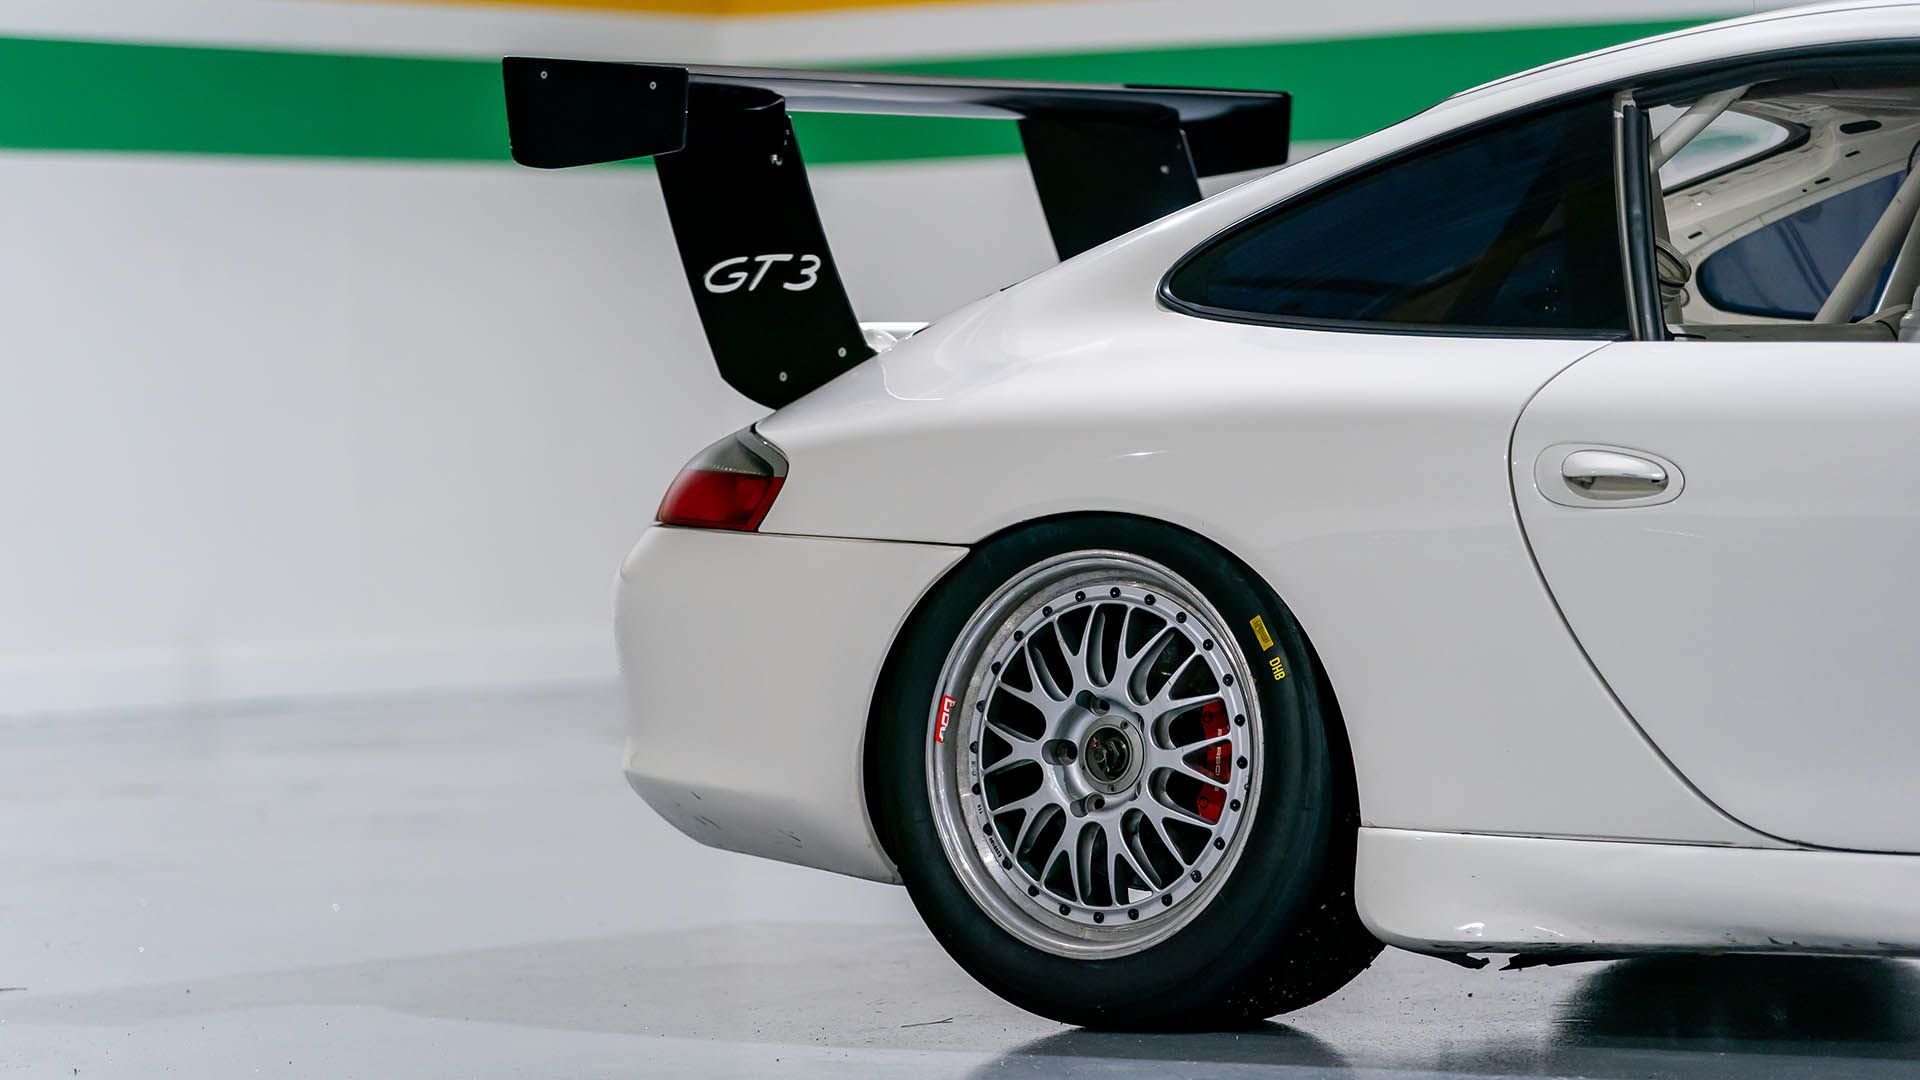 For Sale 2001 Porsche 911 GT3 Cup